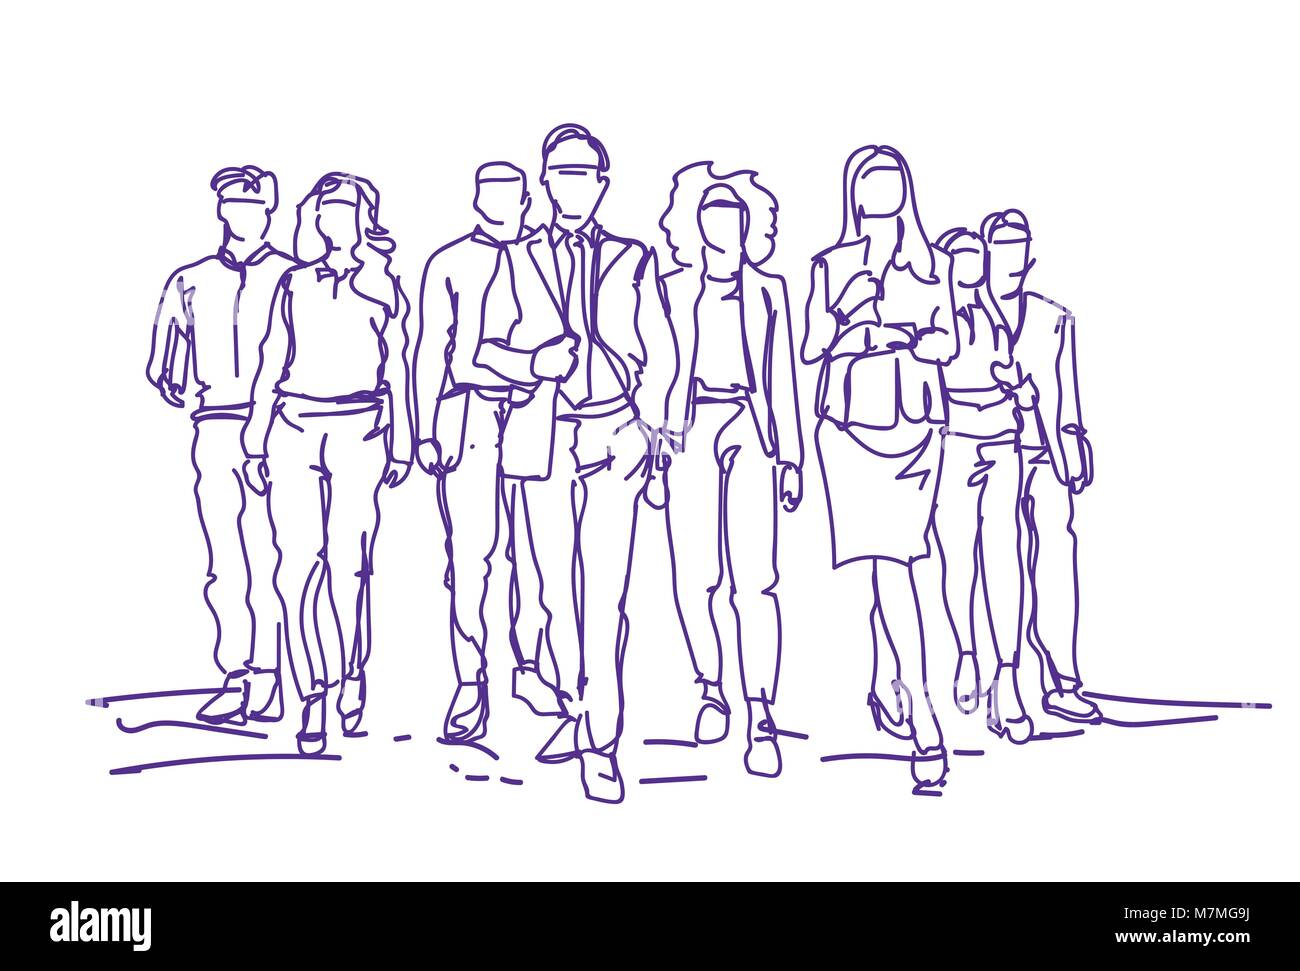 Equipo de empresarios Sketch avanzando sobre fondo blanco, el grupo de gente de negocios dibujados a mano Ilustración del Vector